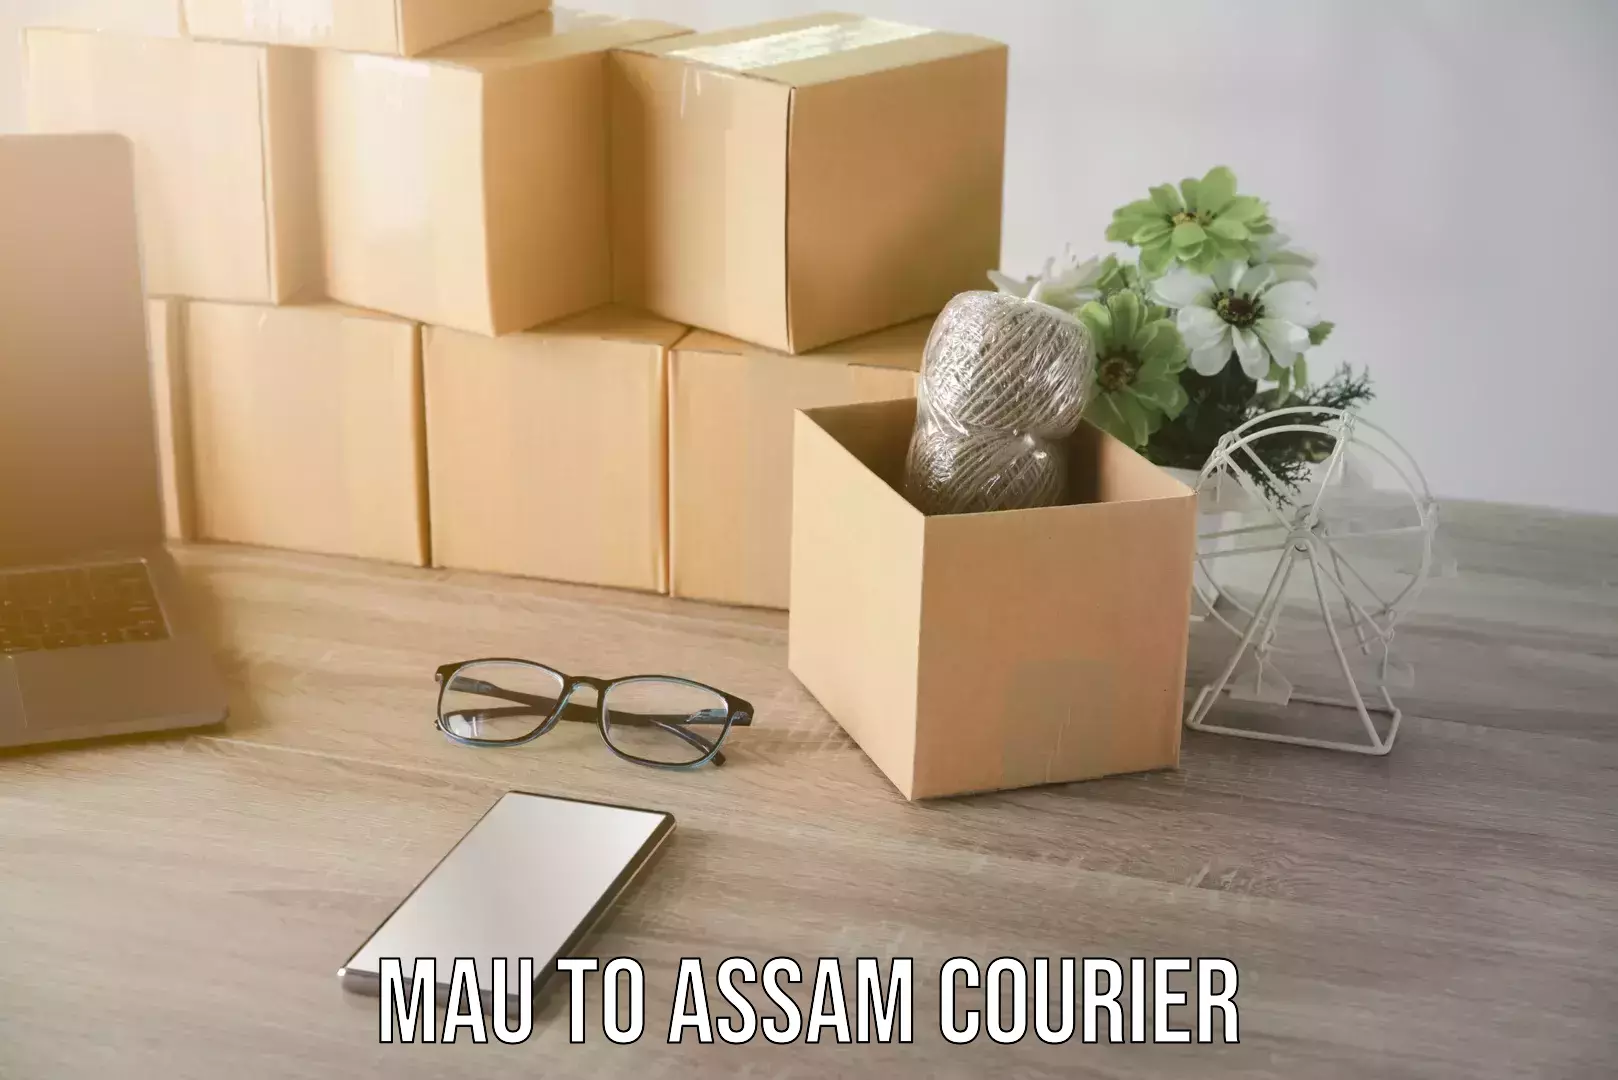 Furniture transport experts Mau to Assam